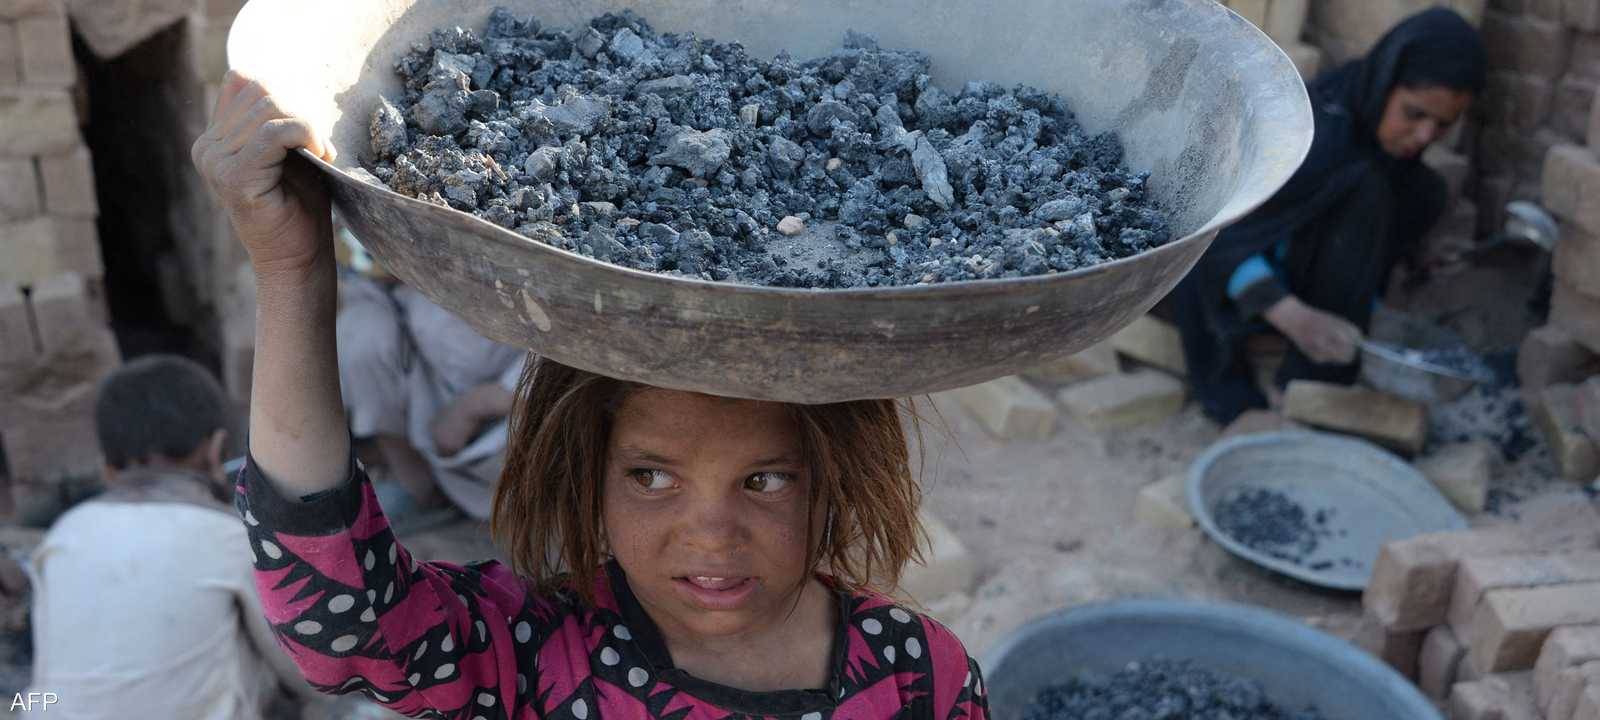 يعيش 72 في المئة من الأفغان تحت خط الفقر